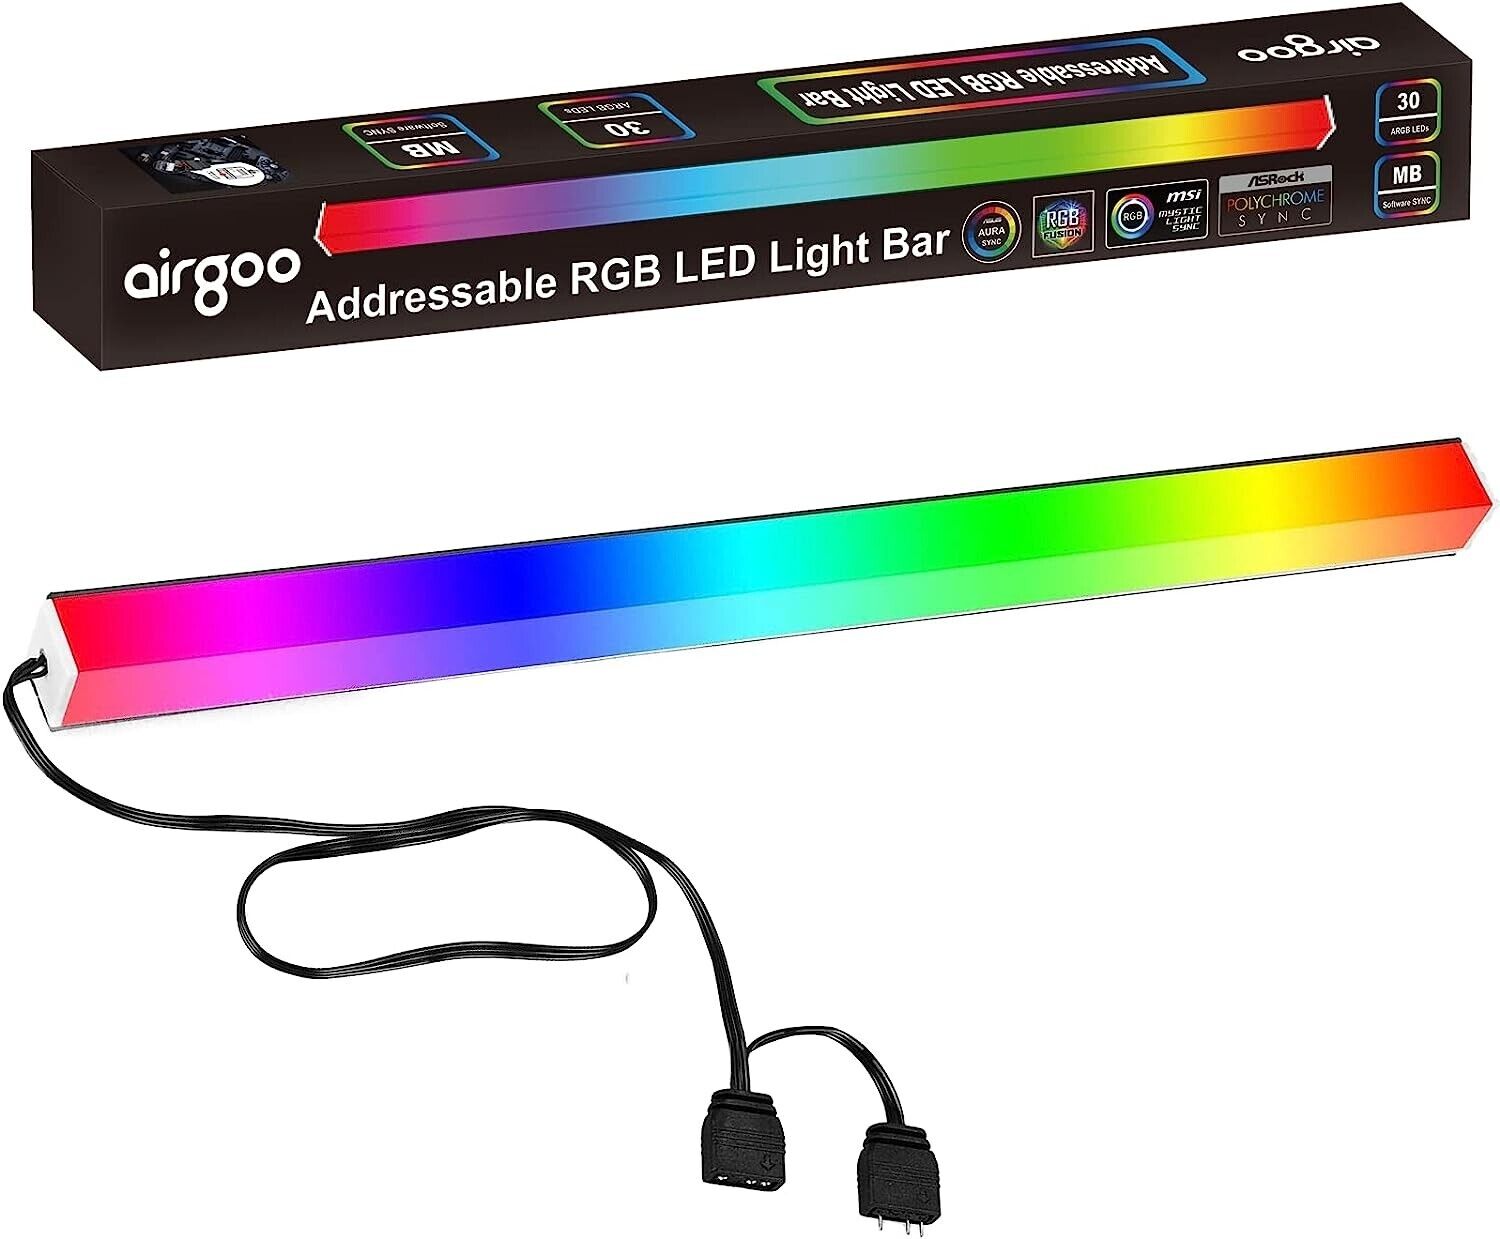 Addressable RGB LED Magnetic Strip for PC Gaming Case, 0.98ft 30LED for 5V 3-pin